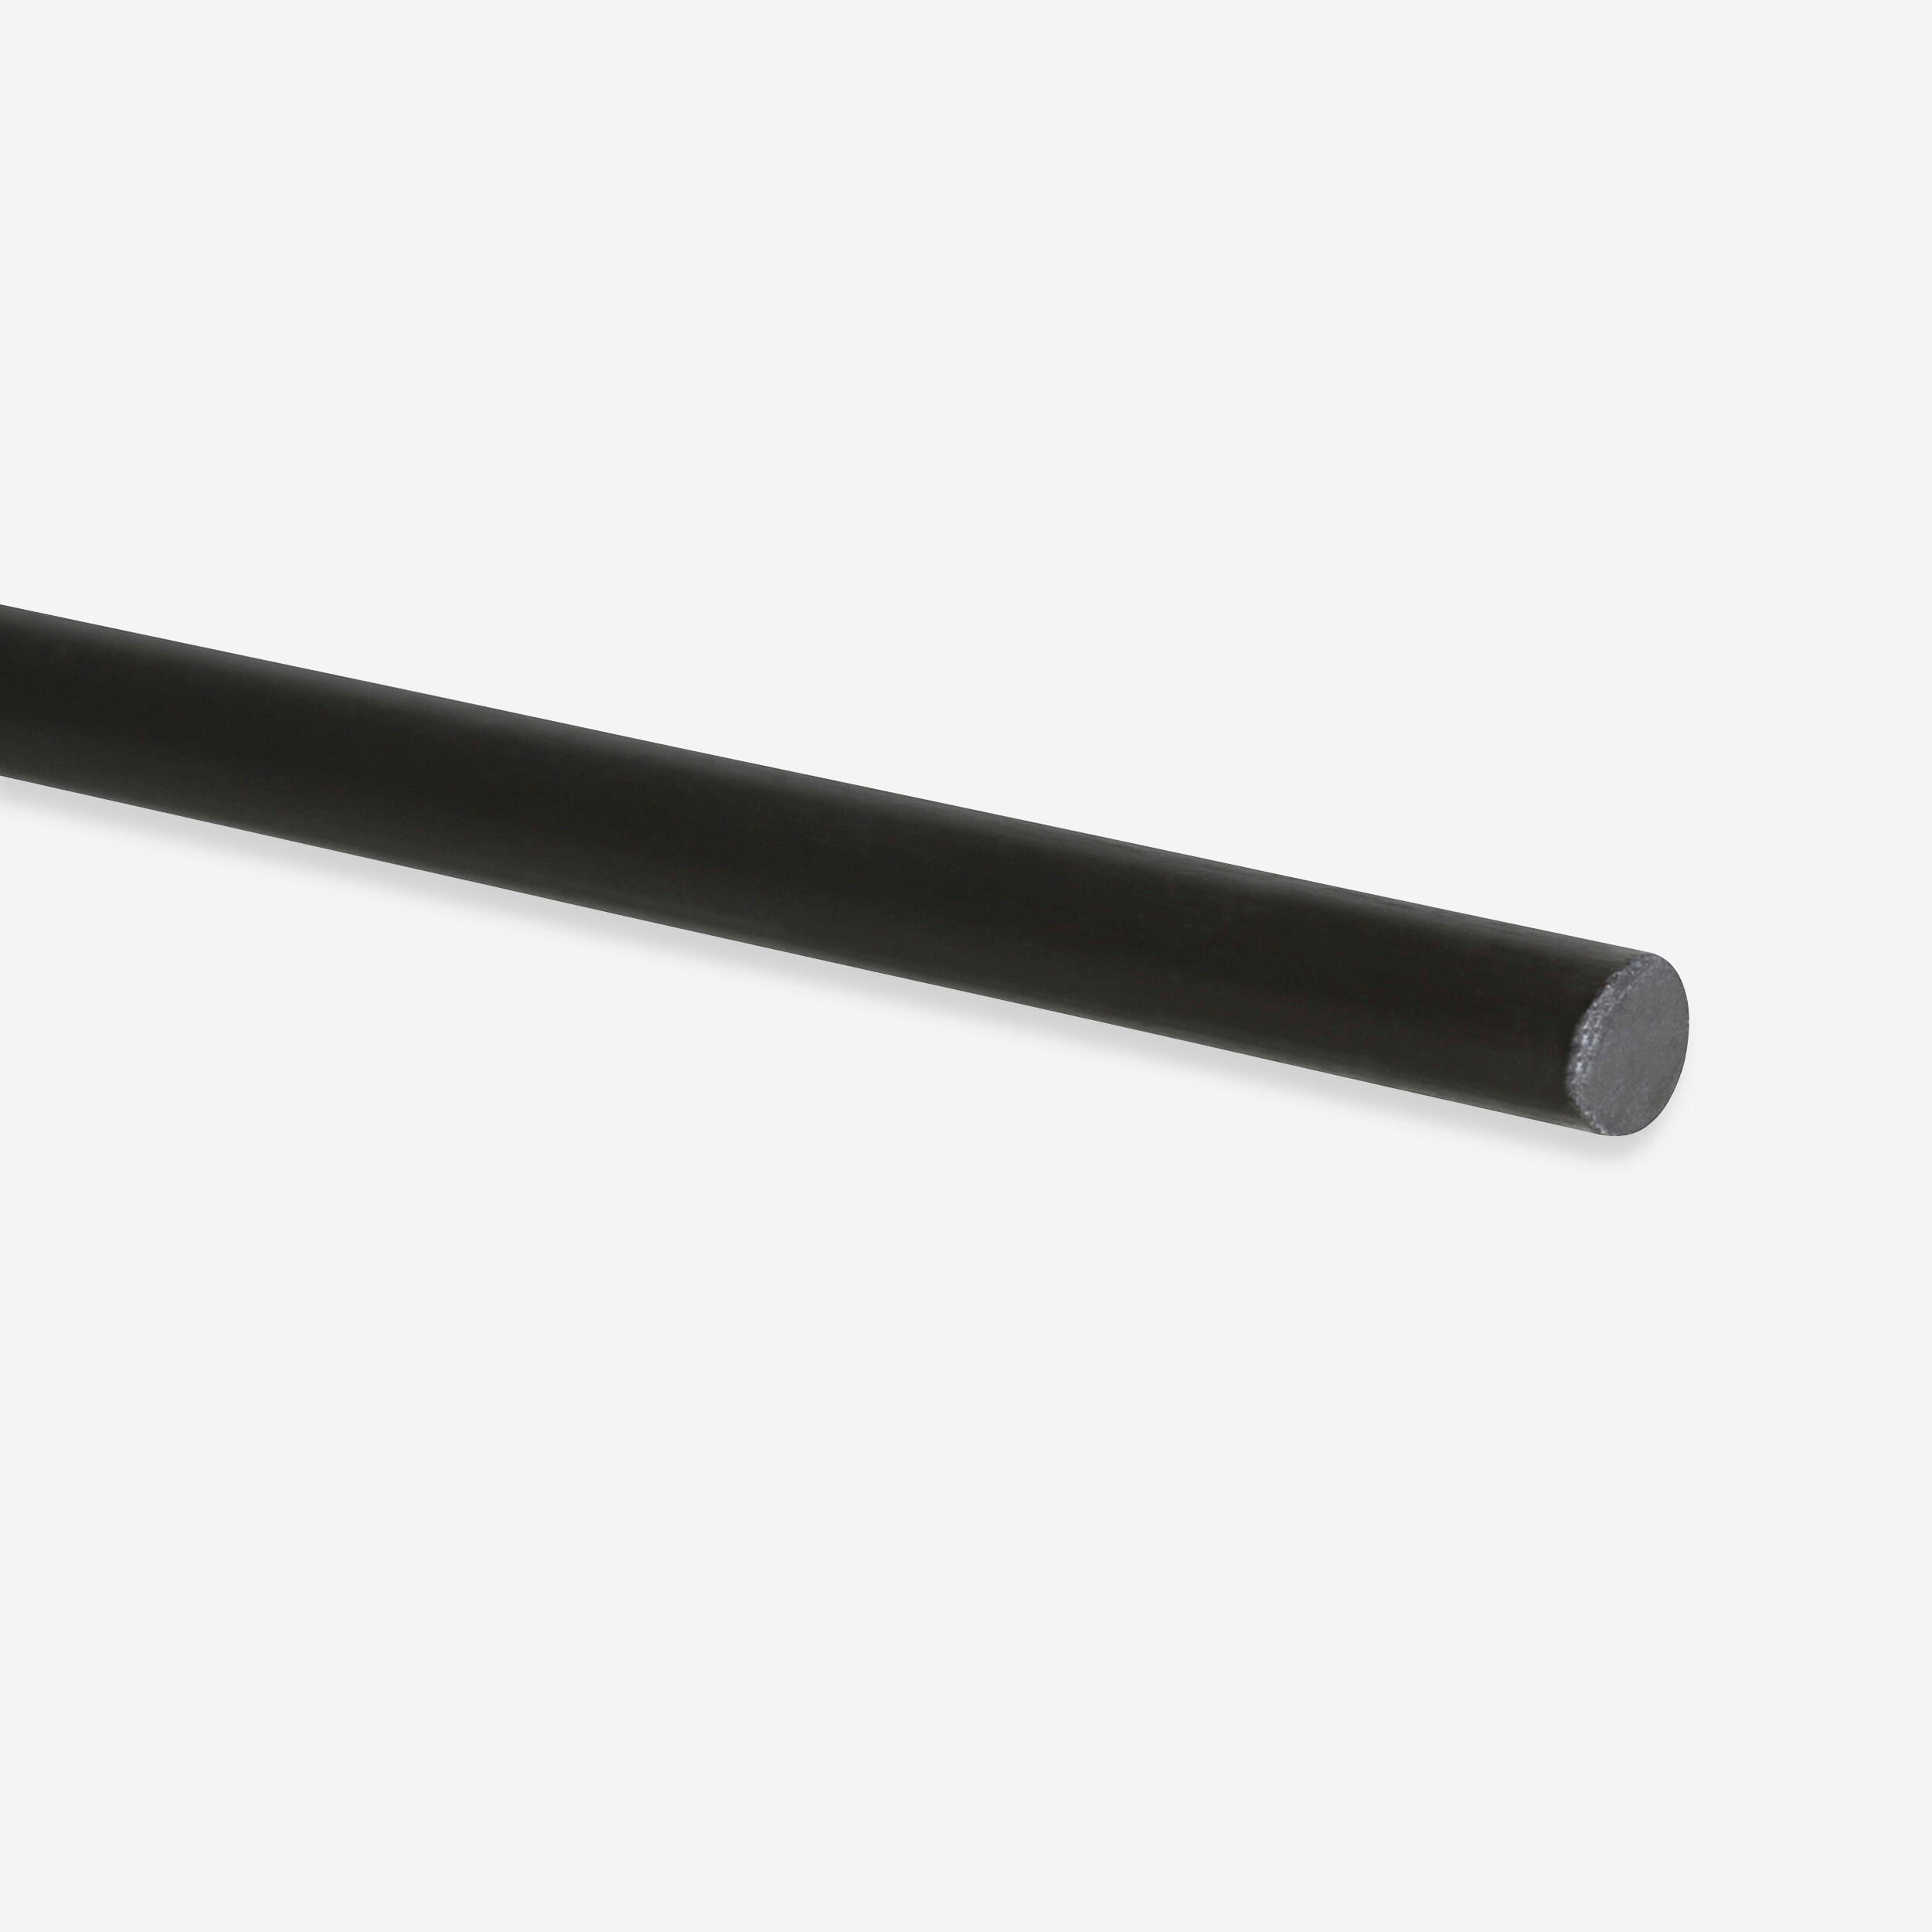 ORAO Carbon Rod 3 mm x 160 cm